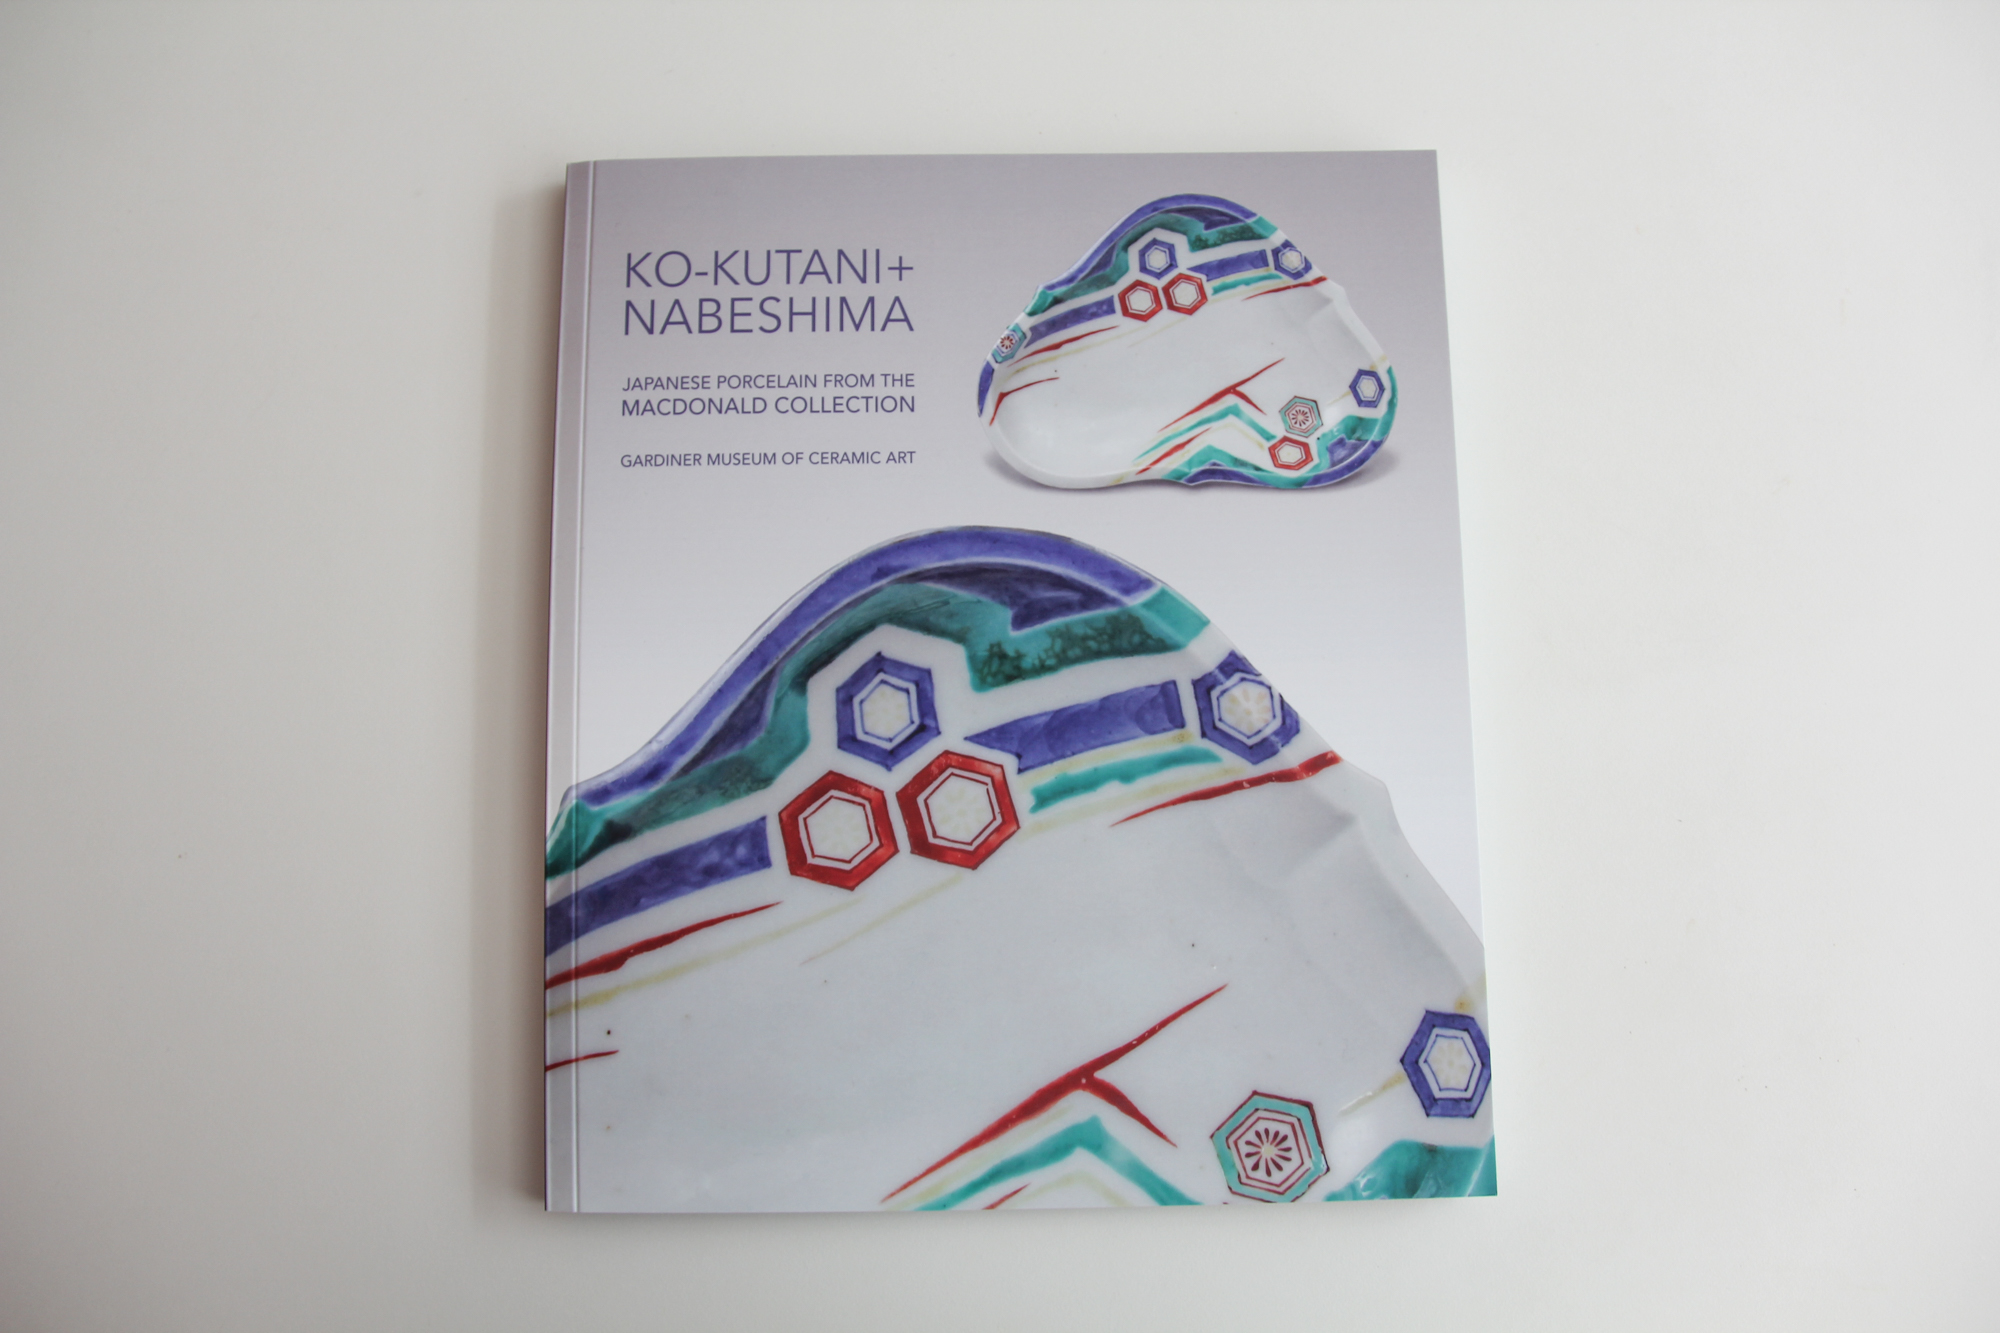 Ko-Kutani + Nabeshima: Japanese Porcelain from the Macdonald Collection Product Image 2 of 2